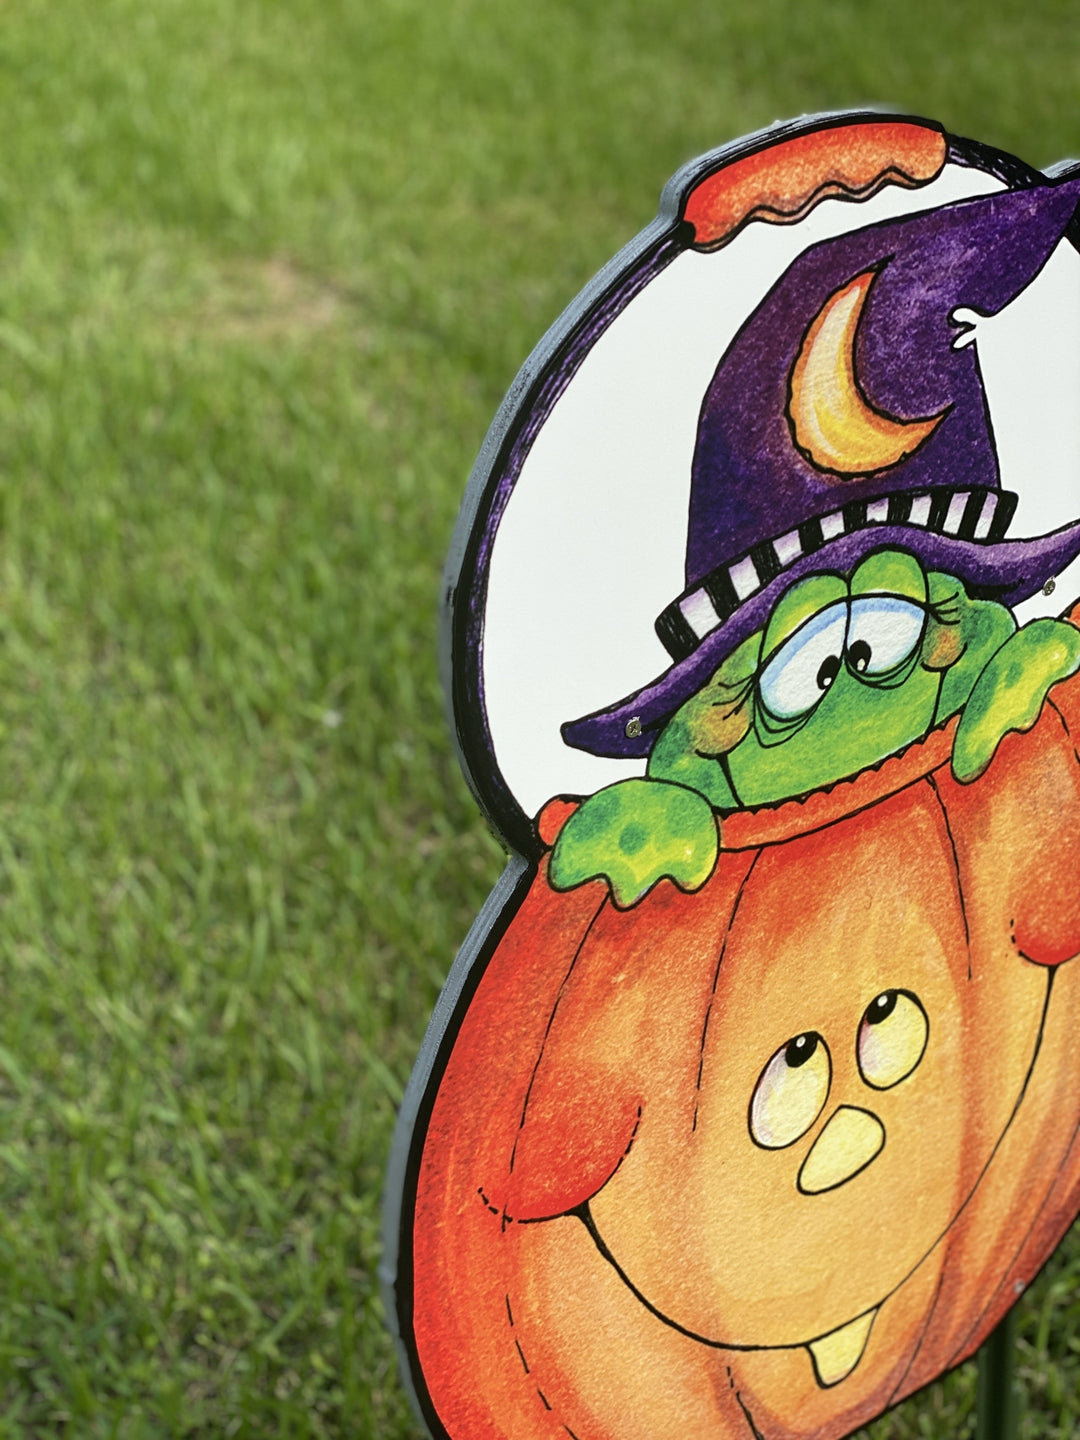 Frog and Pumpkin Halloween Yard Art